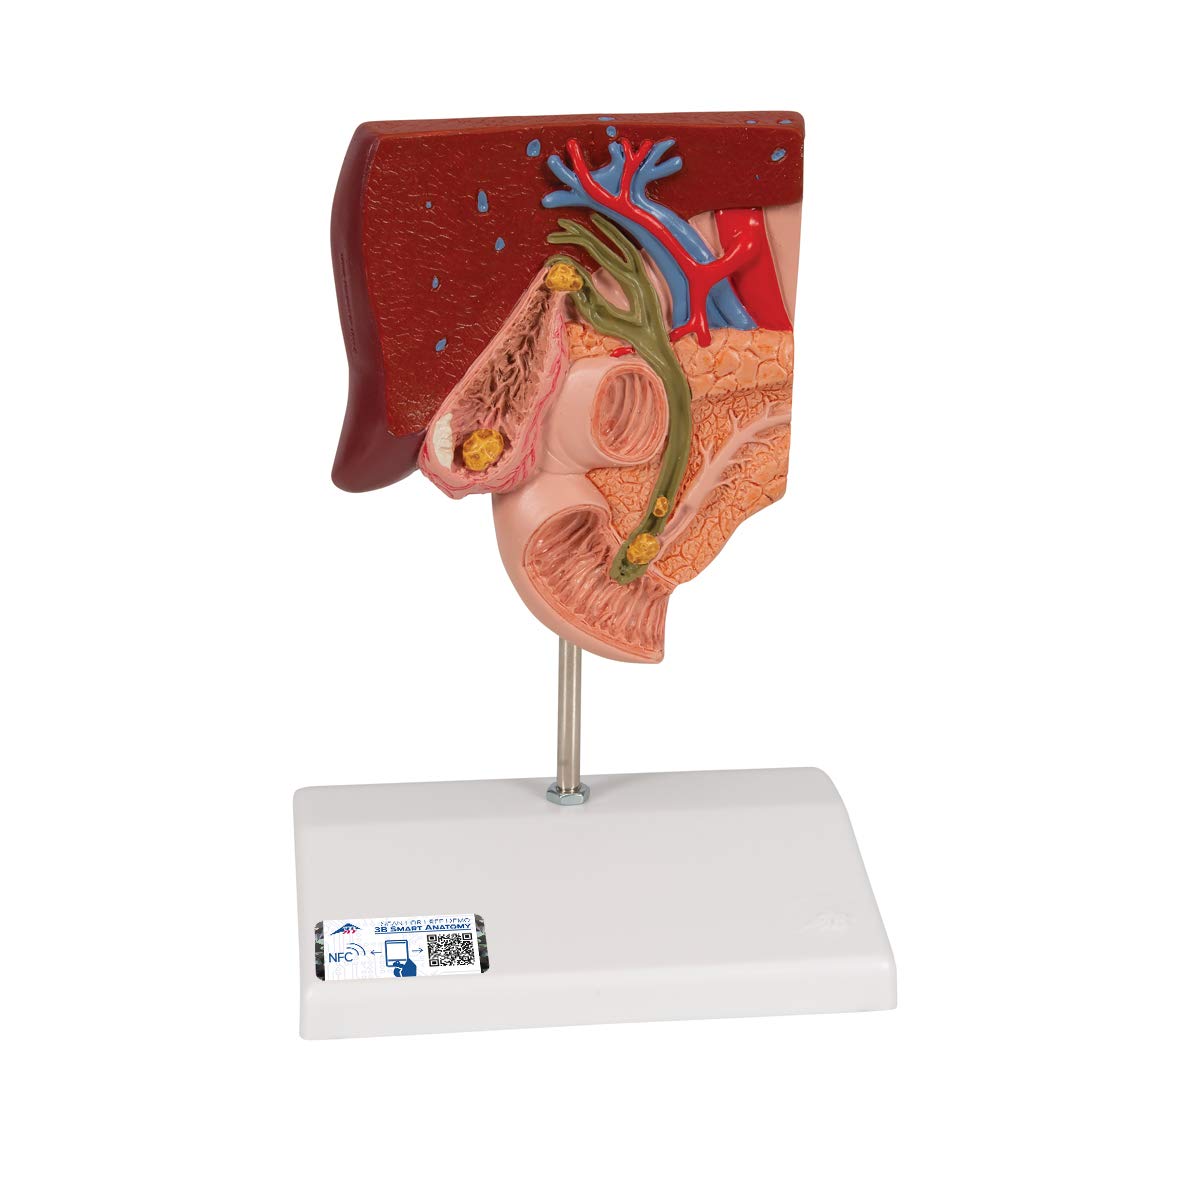 3B Scientific Menschliche Anatomie - Gallensteinmodell + kostenlose Anatomie App - 3B Smart Anatomy